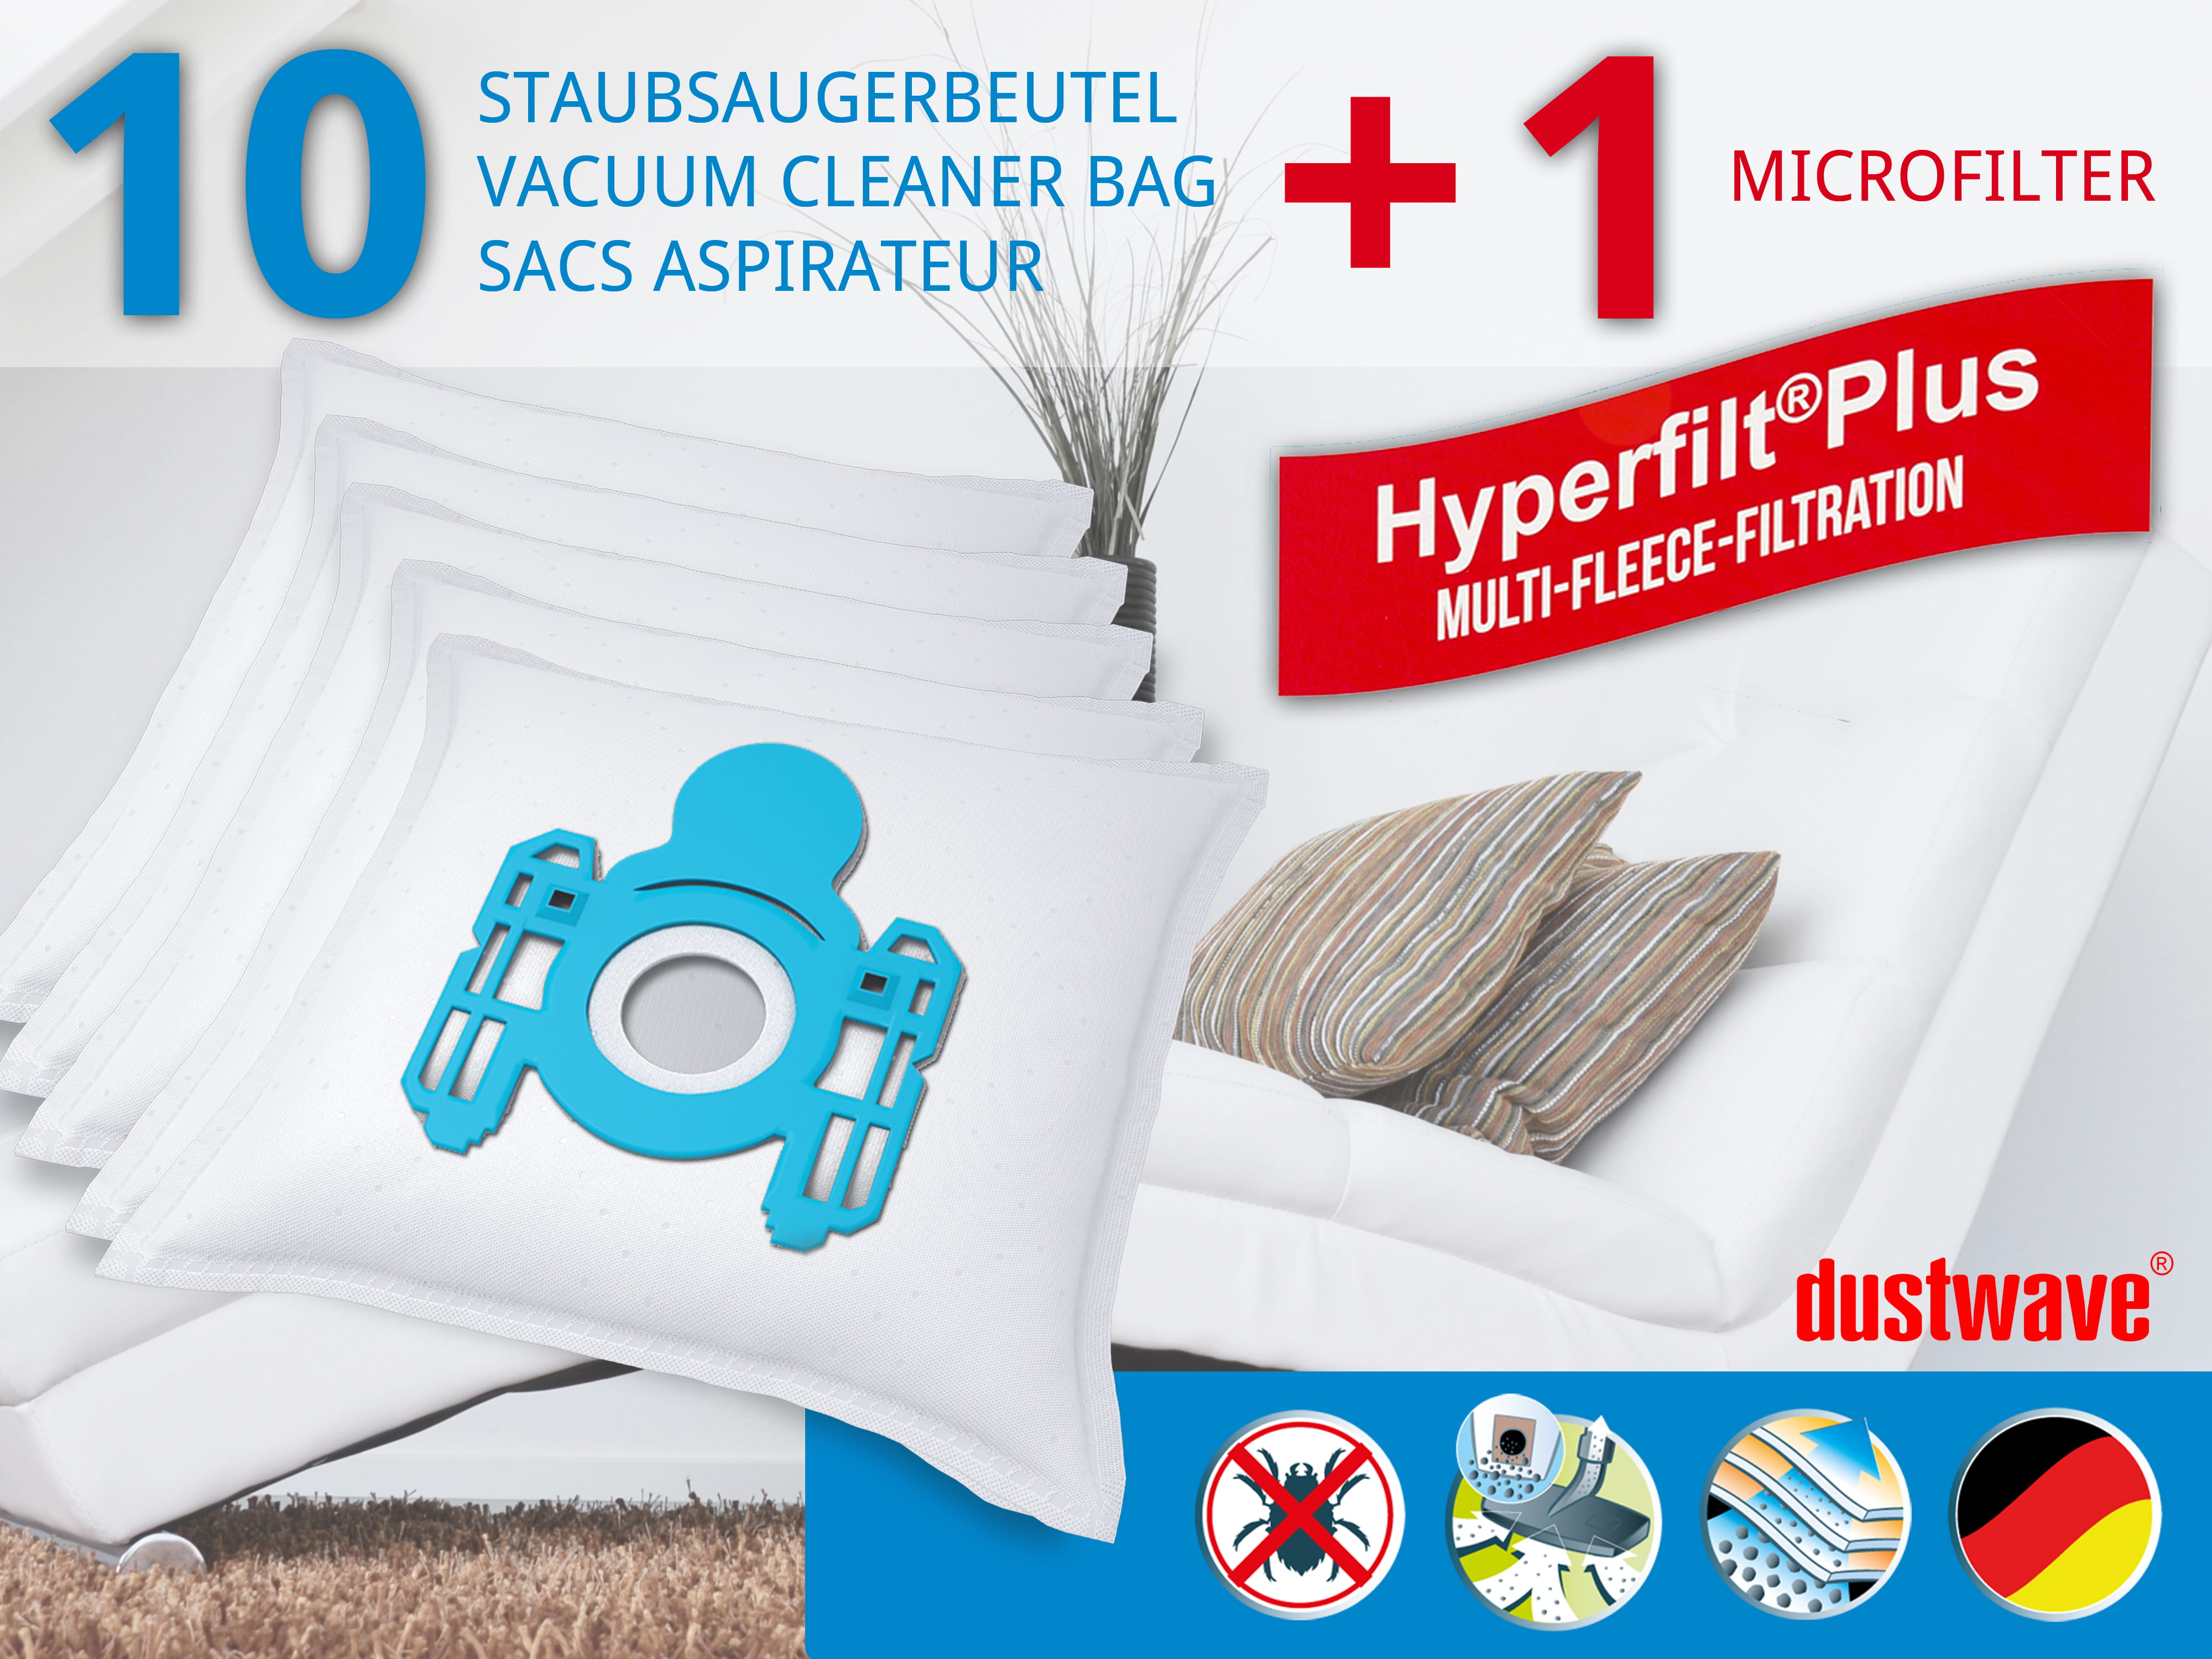 Dustwave® 10 Staubsaugerbeutel für AEG Vampyr CE Carat 158 - hocheffizient, mehrlagiges Mikrovlies mit Hygieneverschluss - Made in Germany